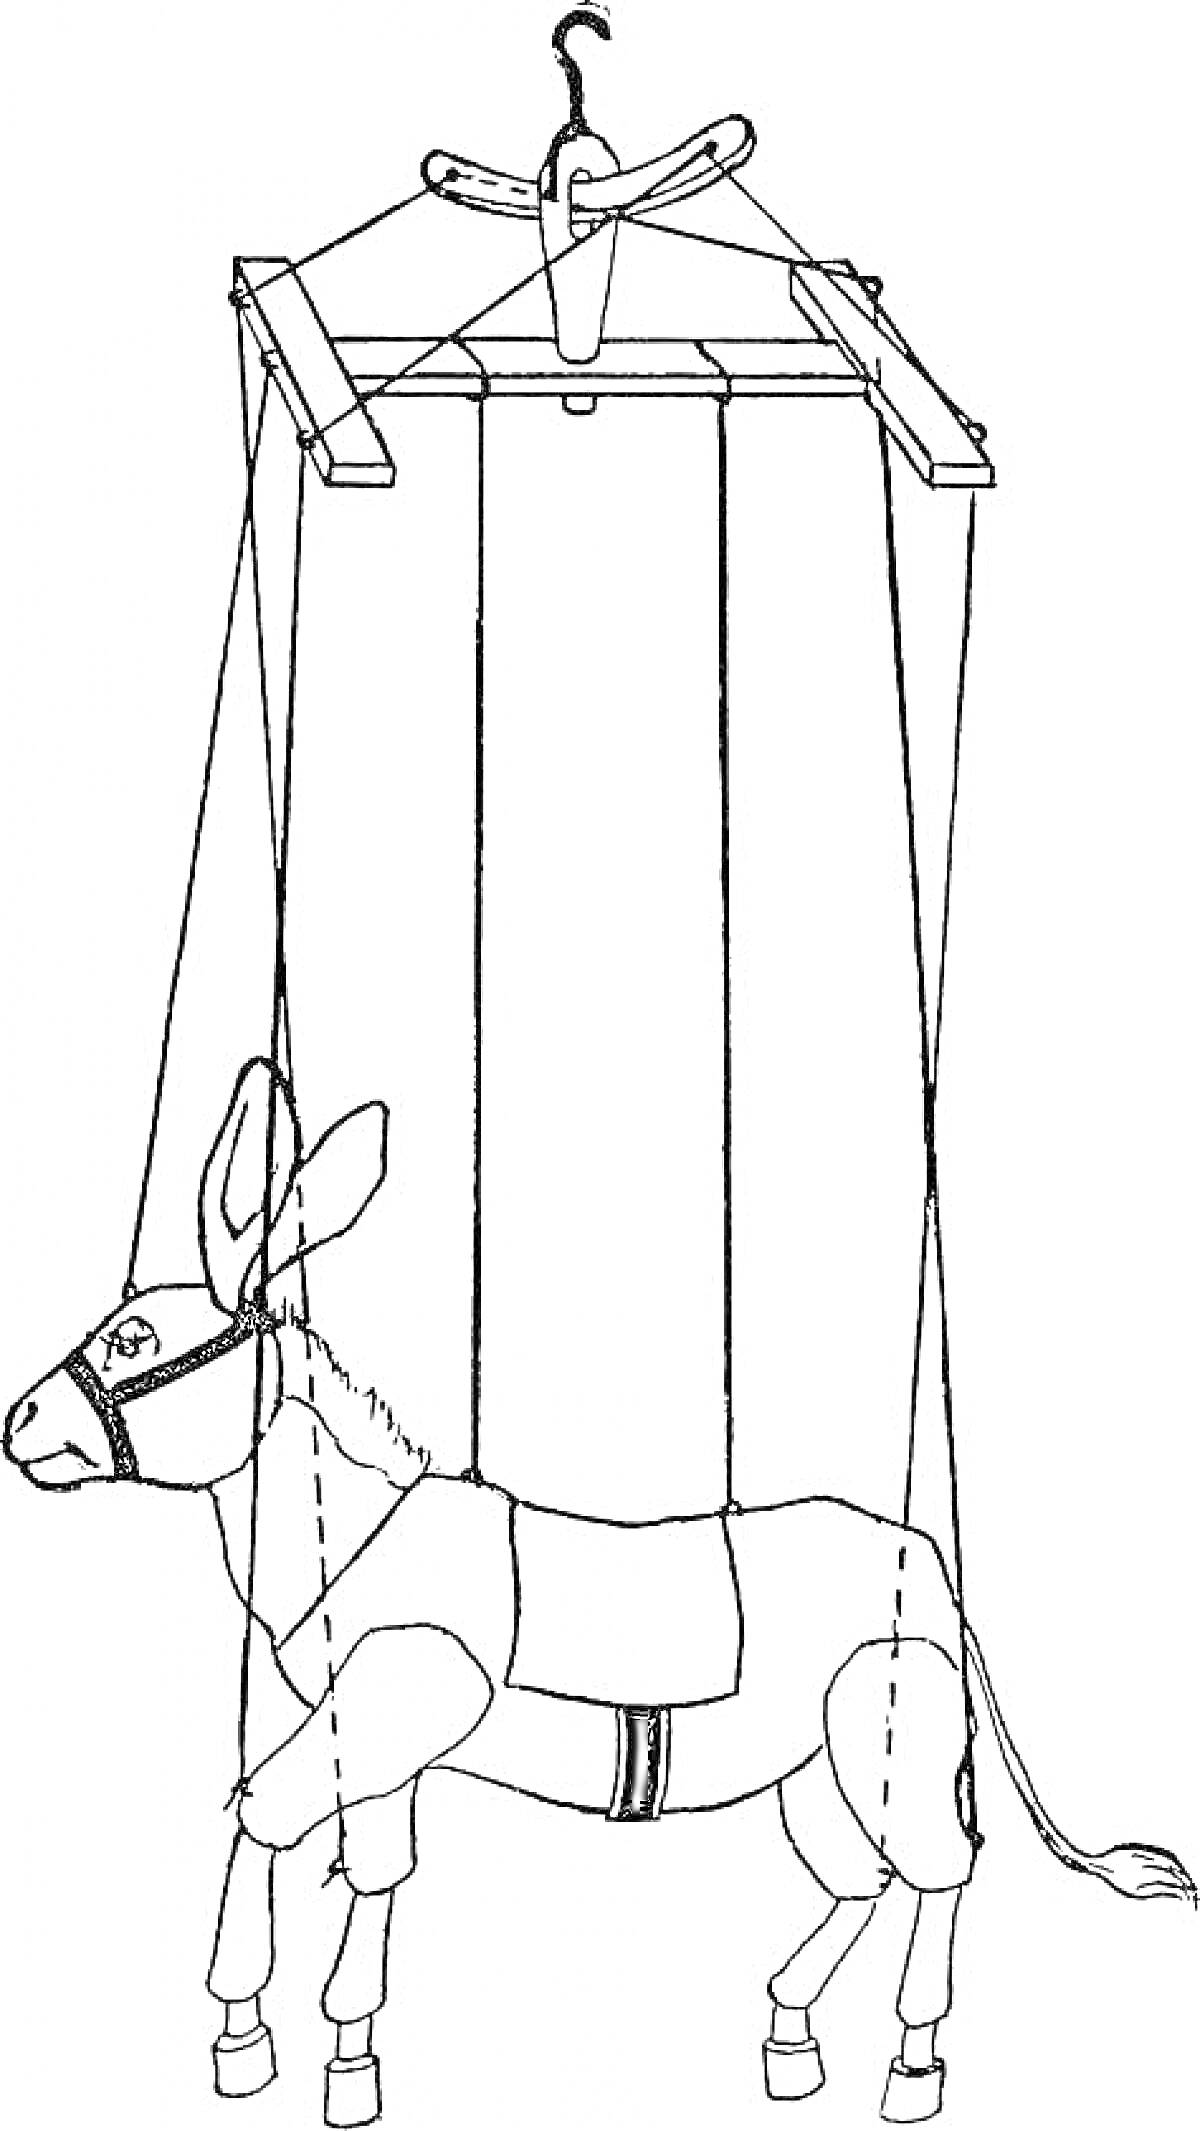 Марионетка-ослик с уздечкой и управляемыми веревками, на управлении находится деревянная перекладина с крючком.